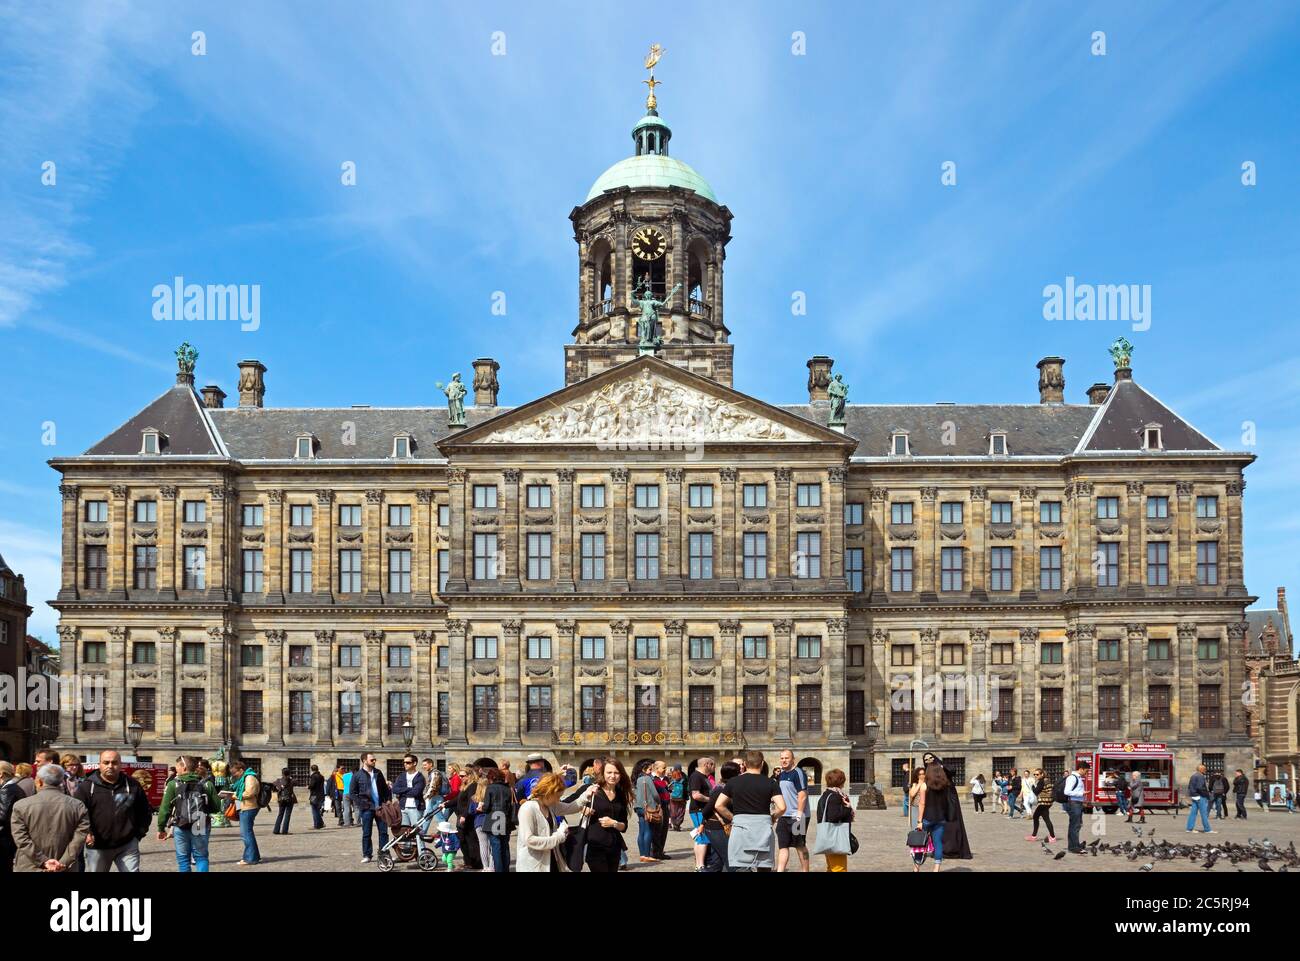 AMSTERDAM, NIEDERLANDE - MAI 30: Der Königspalast am Dam-Platz am 30. Mai 2014 in Amsterdam, Niederlande. Es wurde als Rathaus der CI gebaut Stockfoto